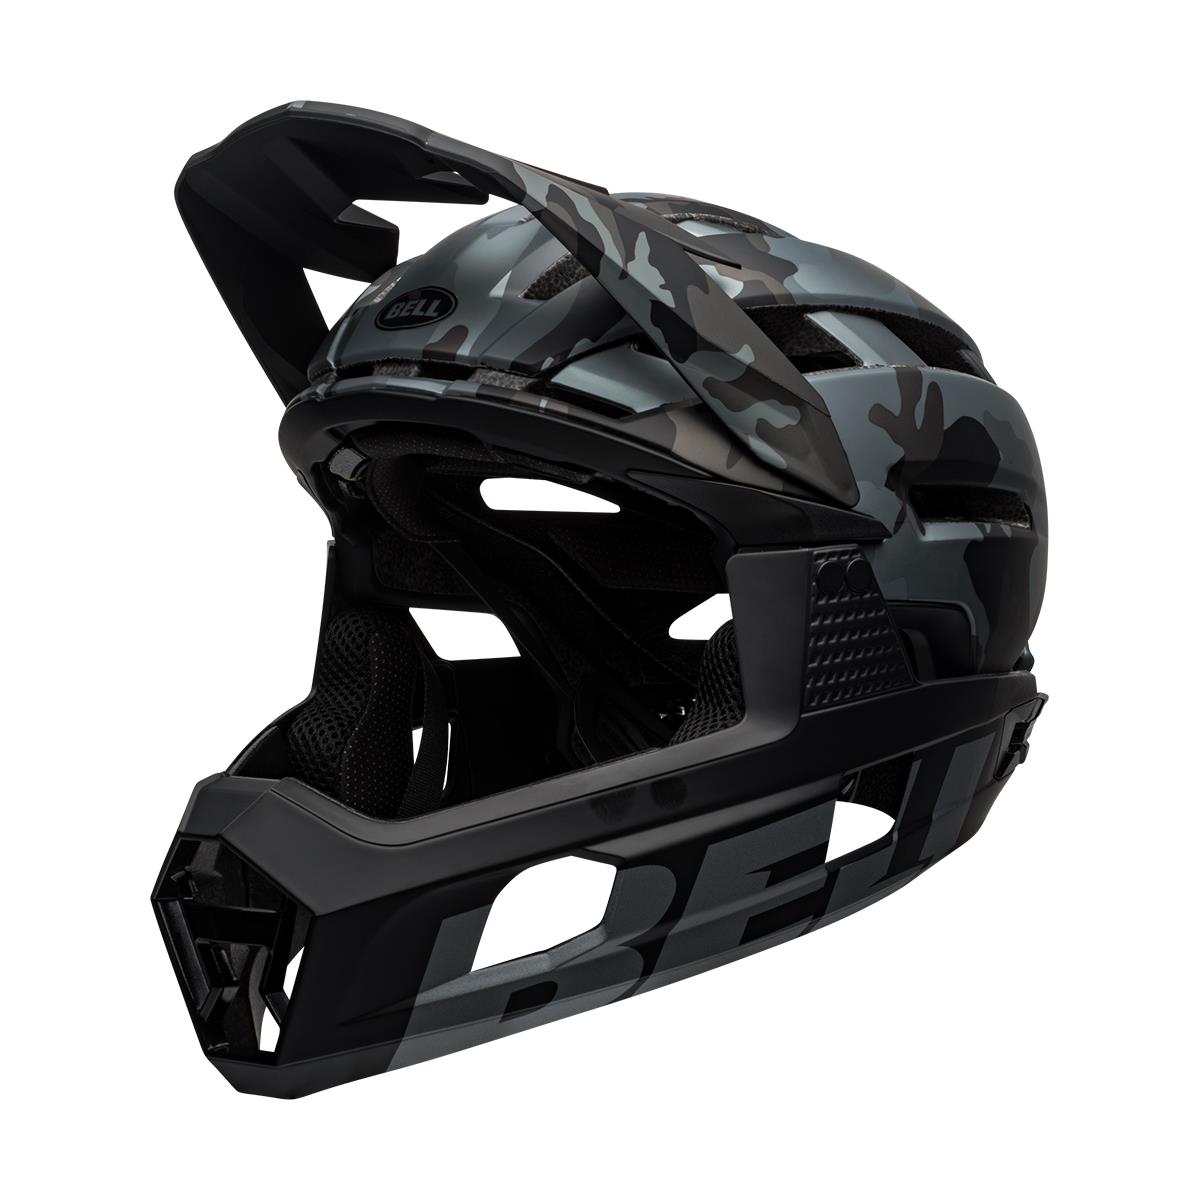 Bell Super Air R Spherical MTB Full Face Helmet